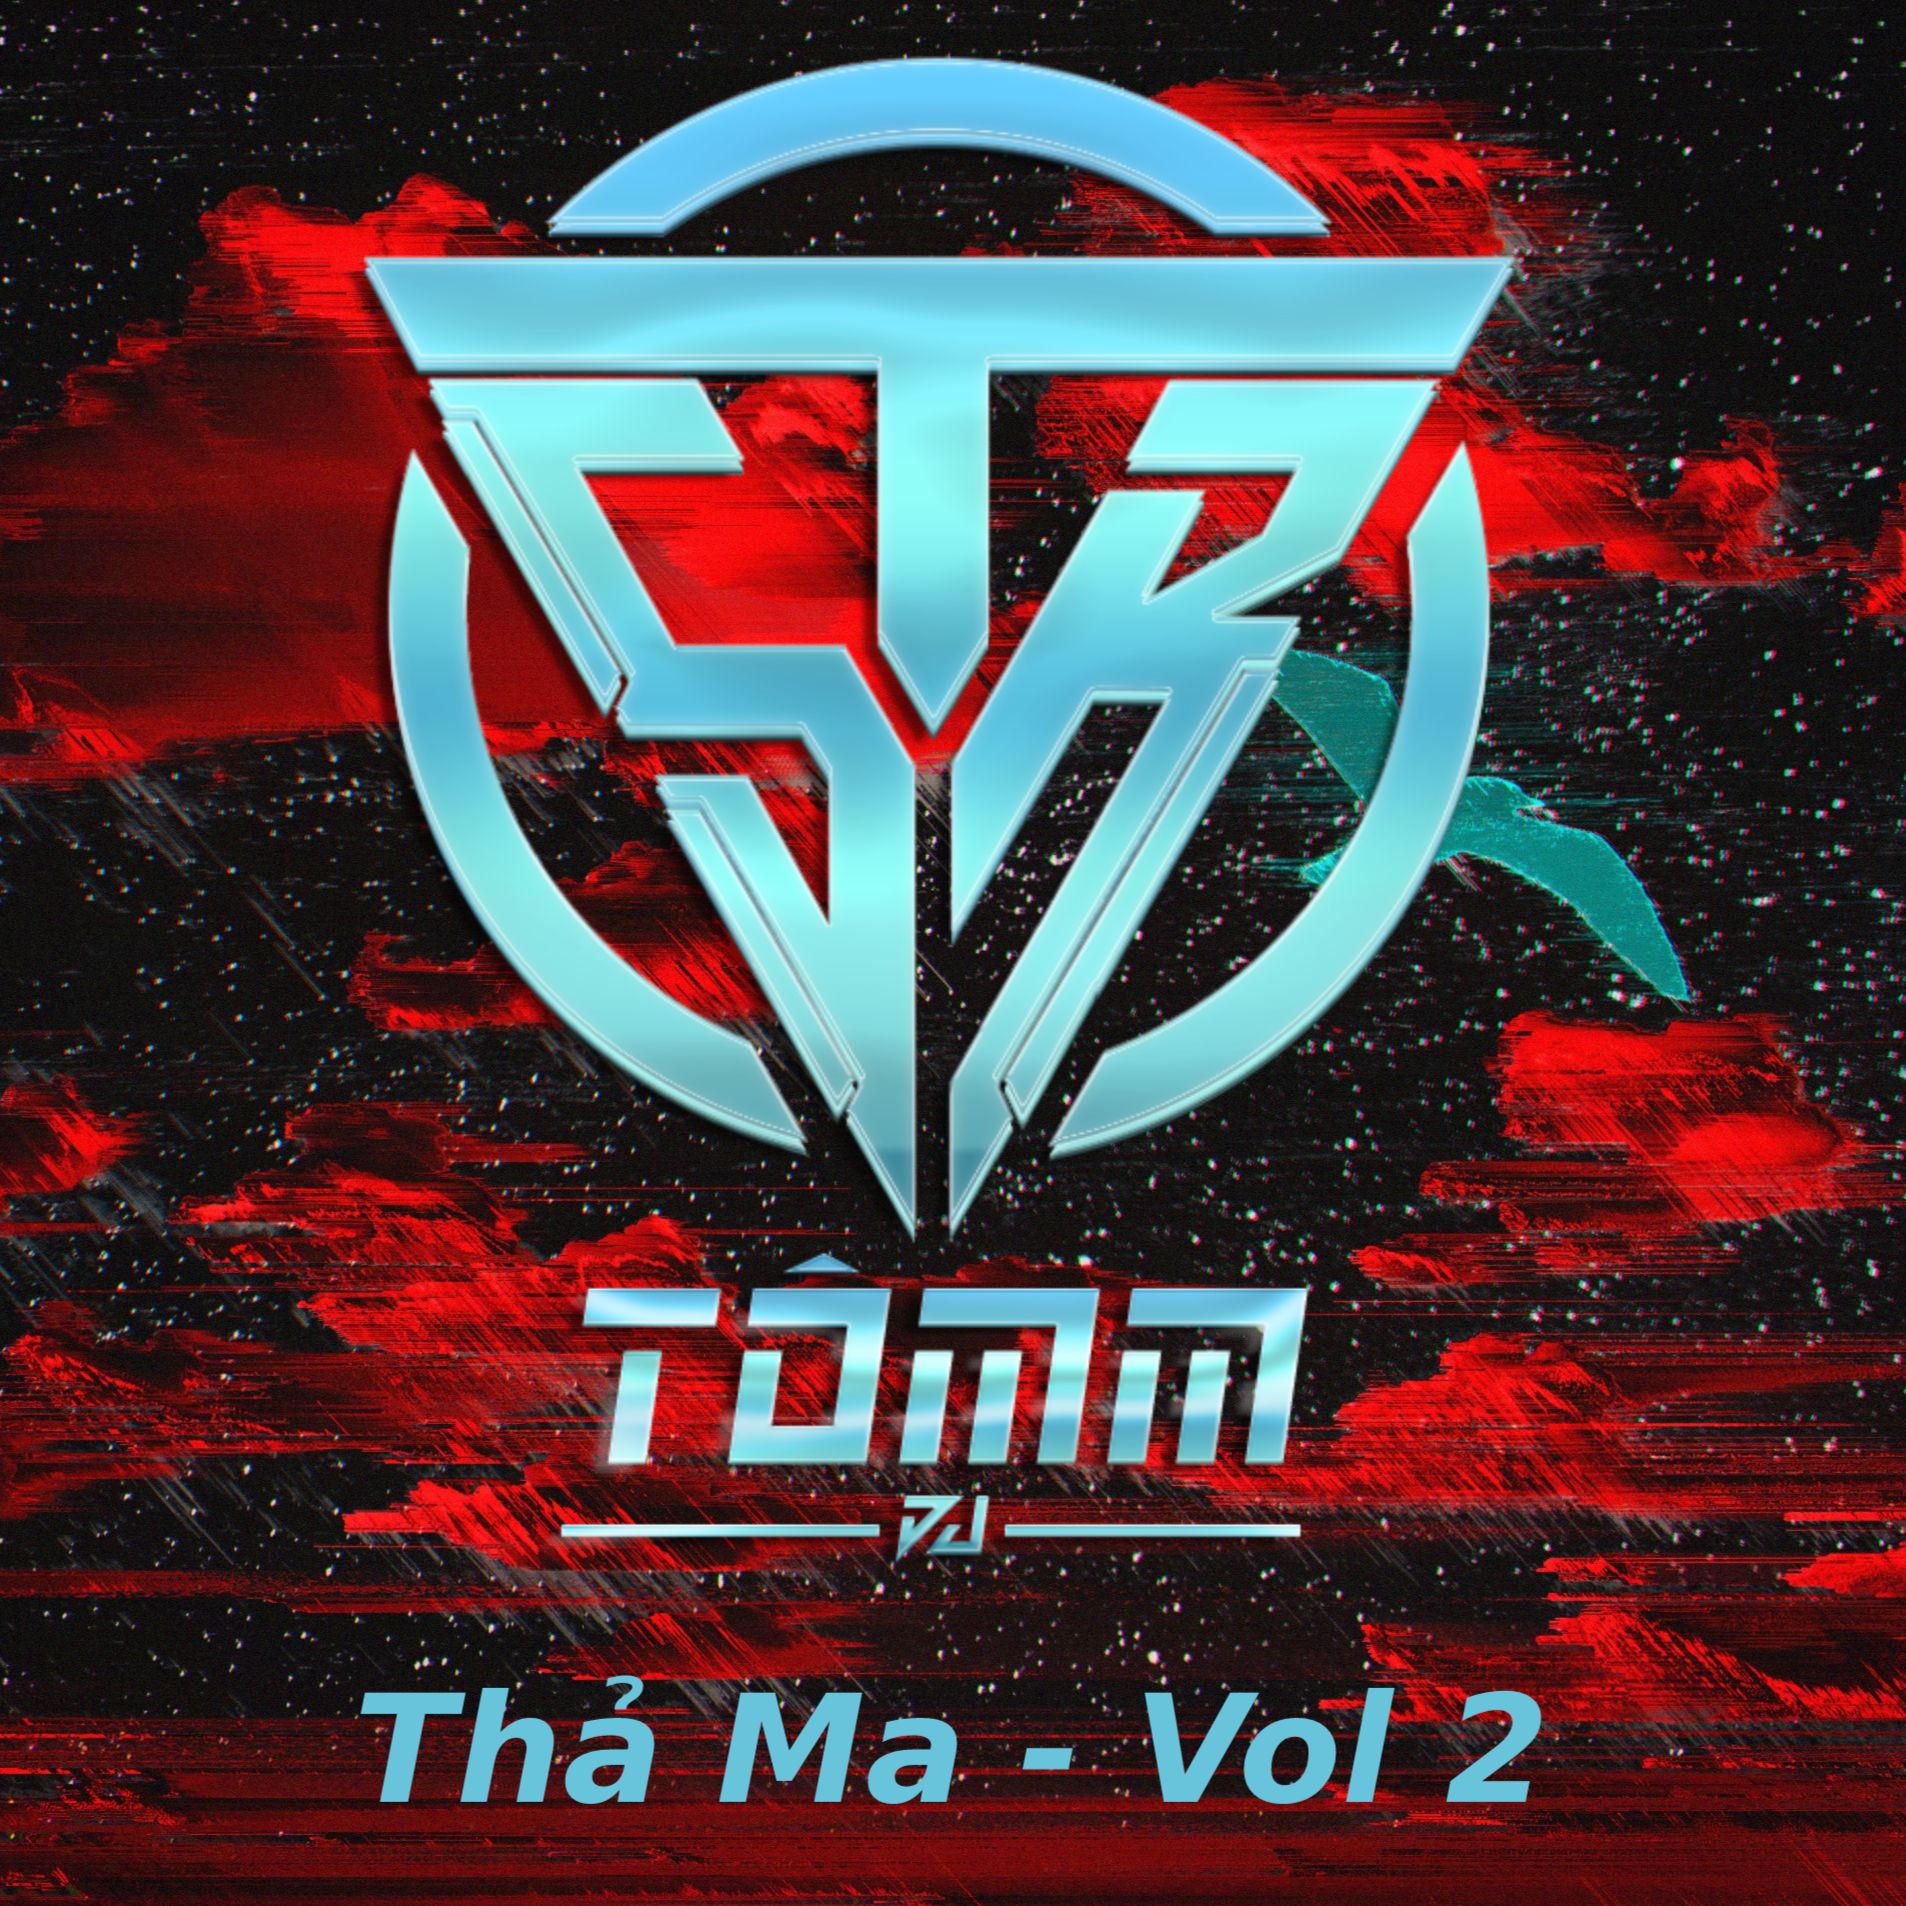 Télécharger Thả Ma - Vol 2 - Tômm